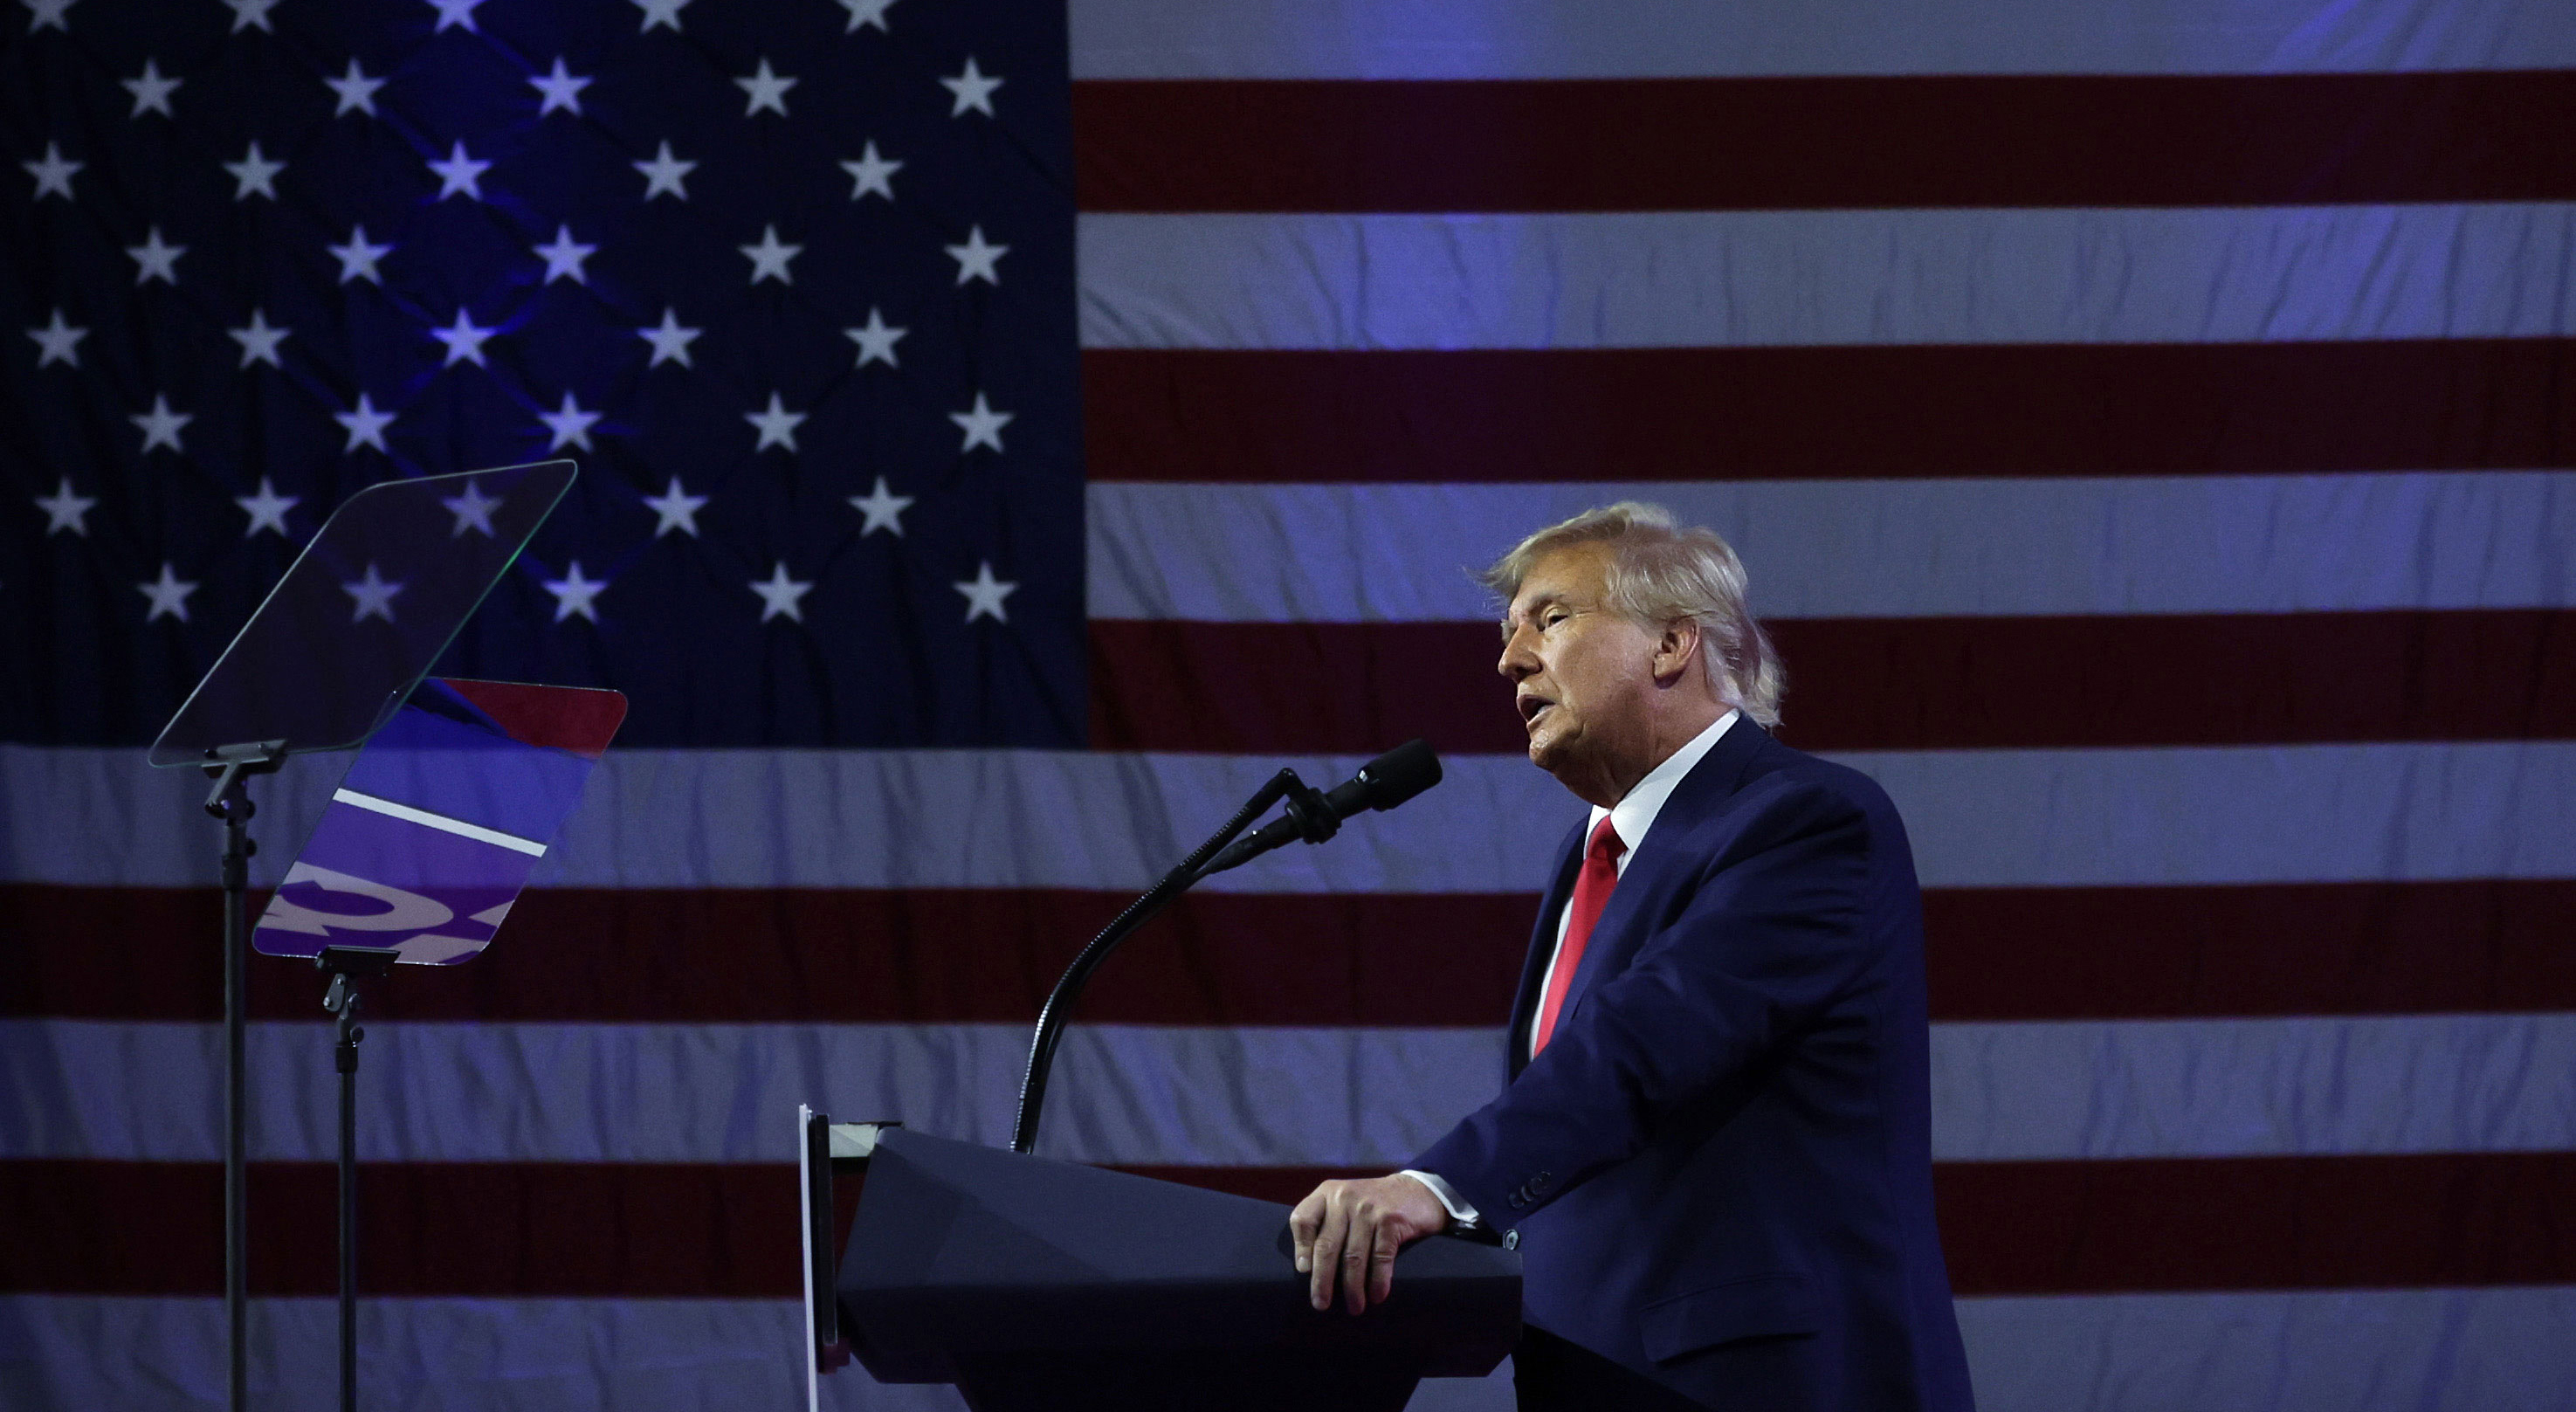 El expresidente Donald Trump criticó sin fundamento lo que llamó "mala conducta del fiscal" en un mitin de campaña el sábado por la noche en Texas, negando haber actuado mal en medio de investigaciones en Nueva York, Georgia y Washington.